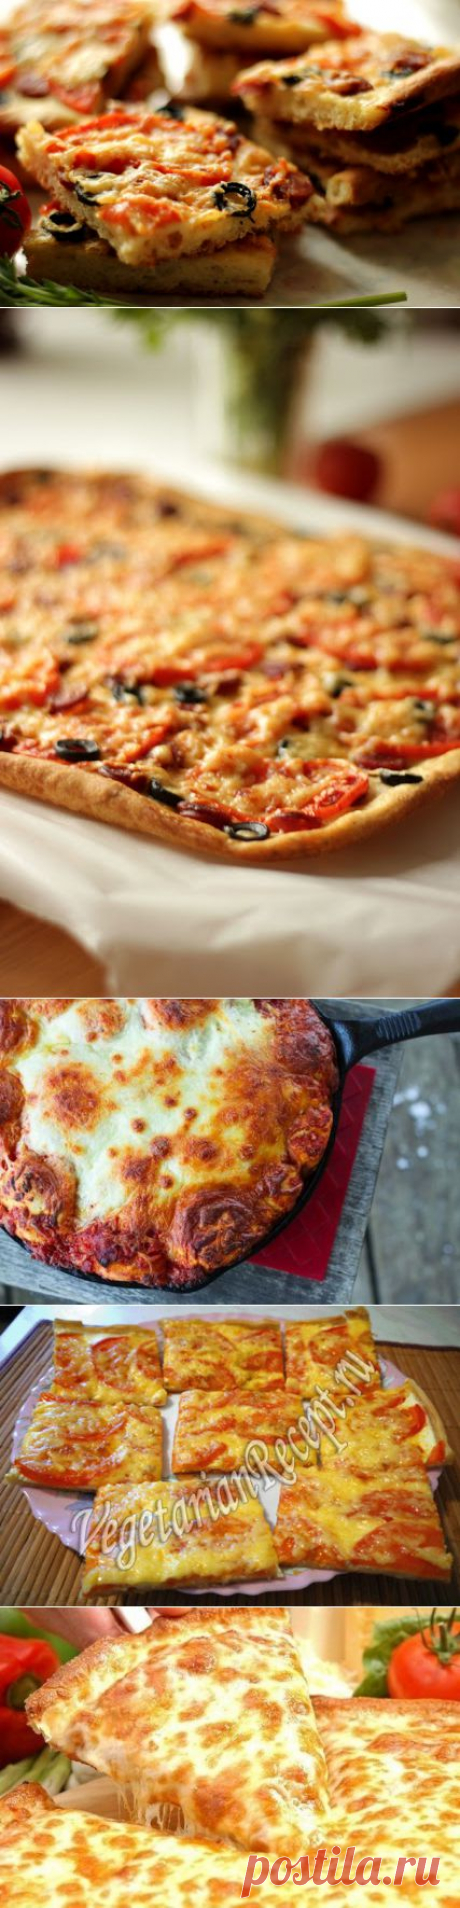 пицца | Несколько рецептов